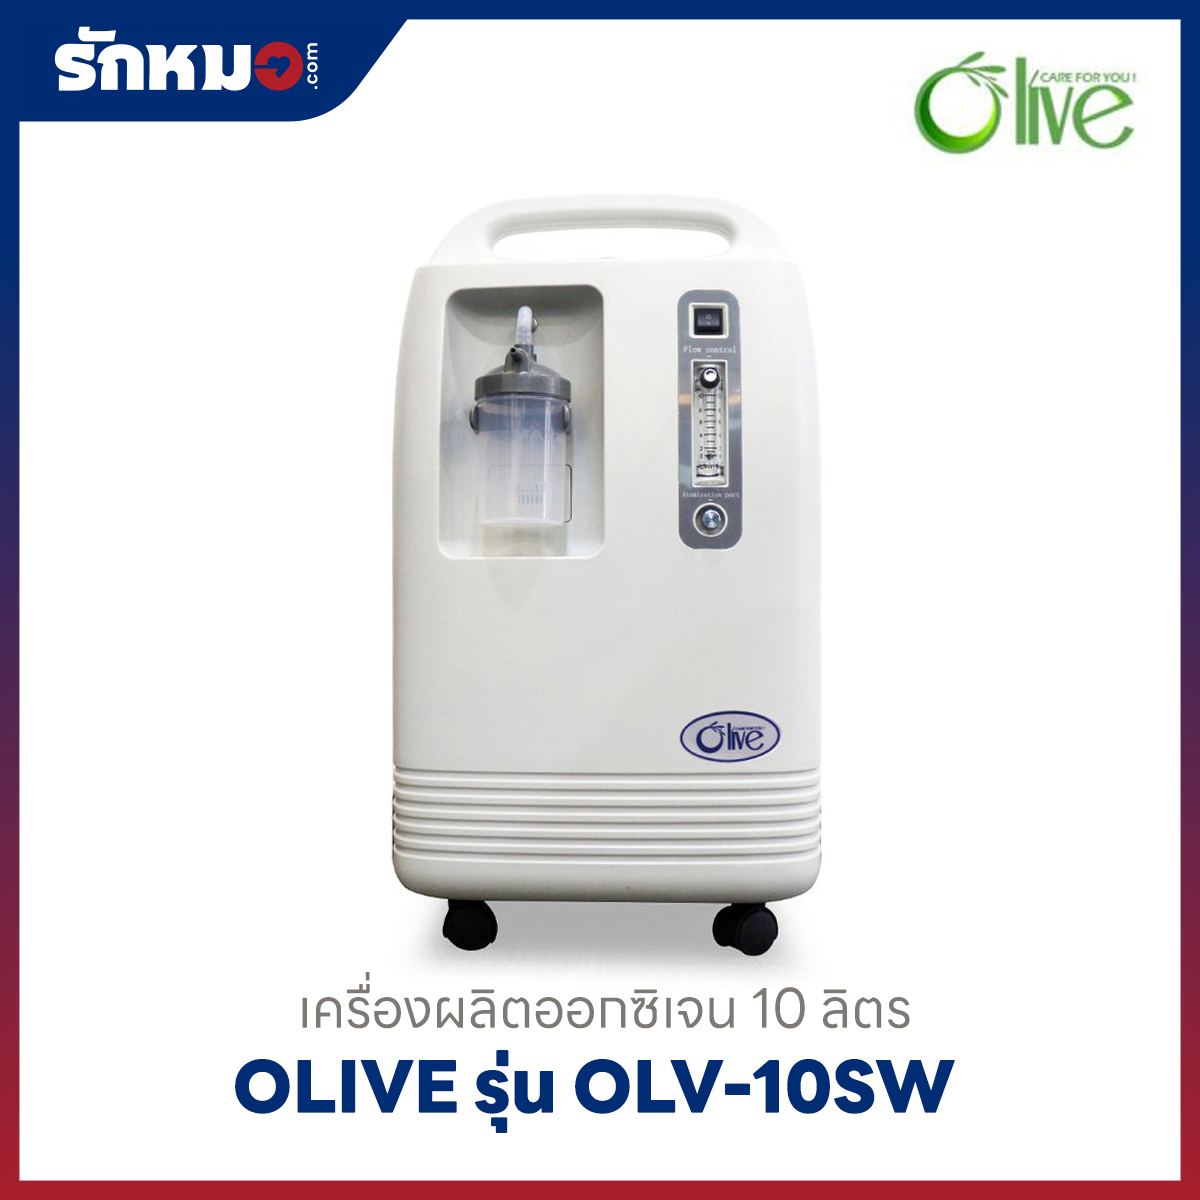 เครื่องผลิตออกซิเจน 10 ลิตร Olive รุ่น OLV-10SW